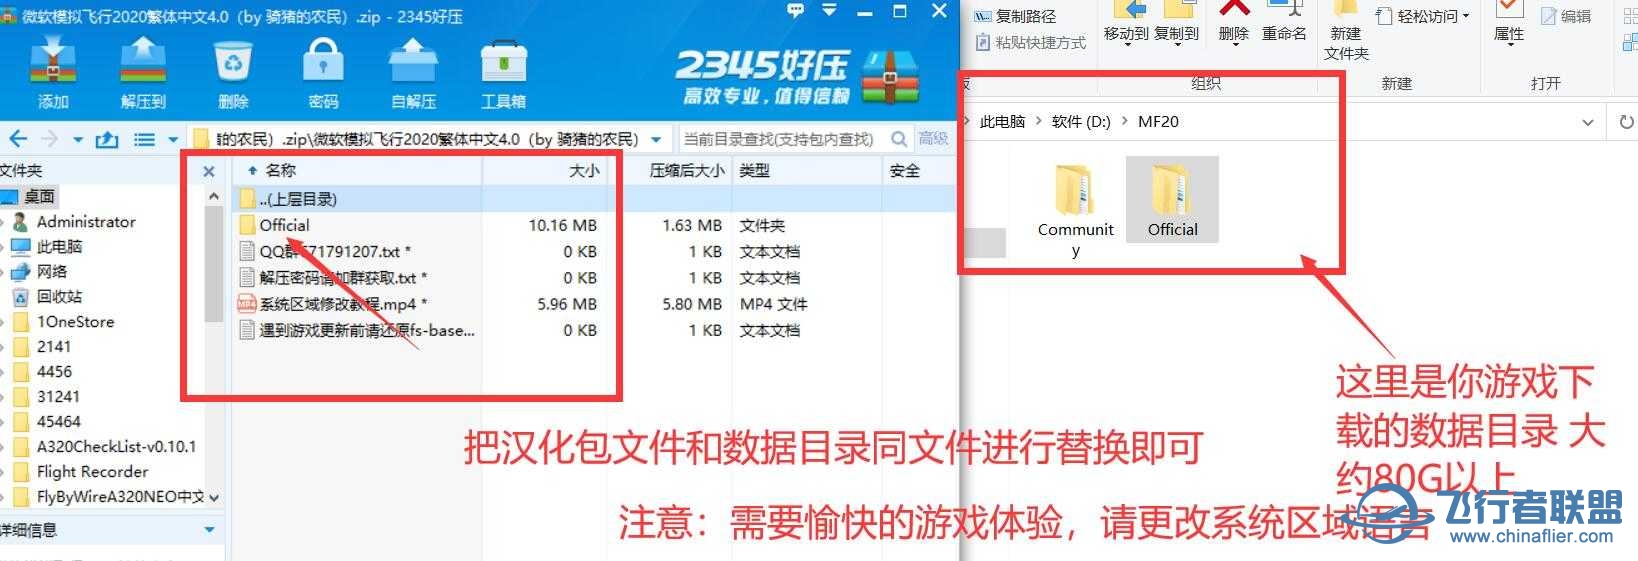 微软模拟飞行2020 1.18.14 繁体中文4.0发布版-4375 